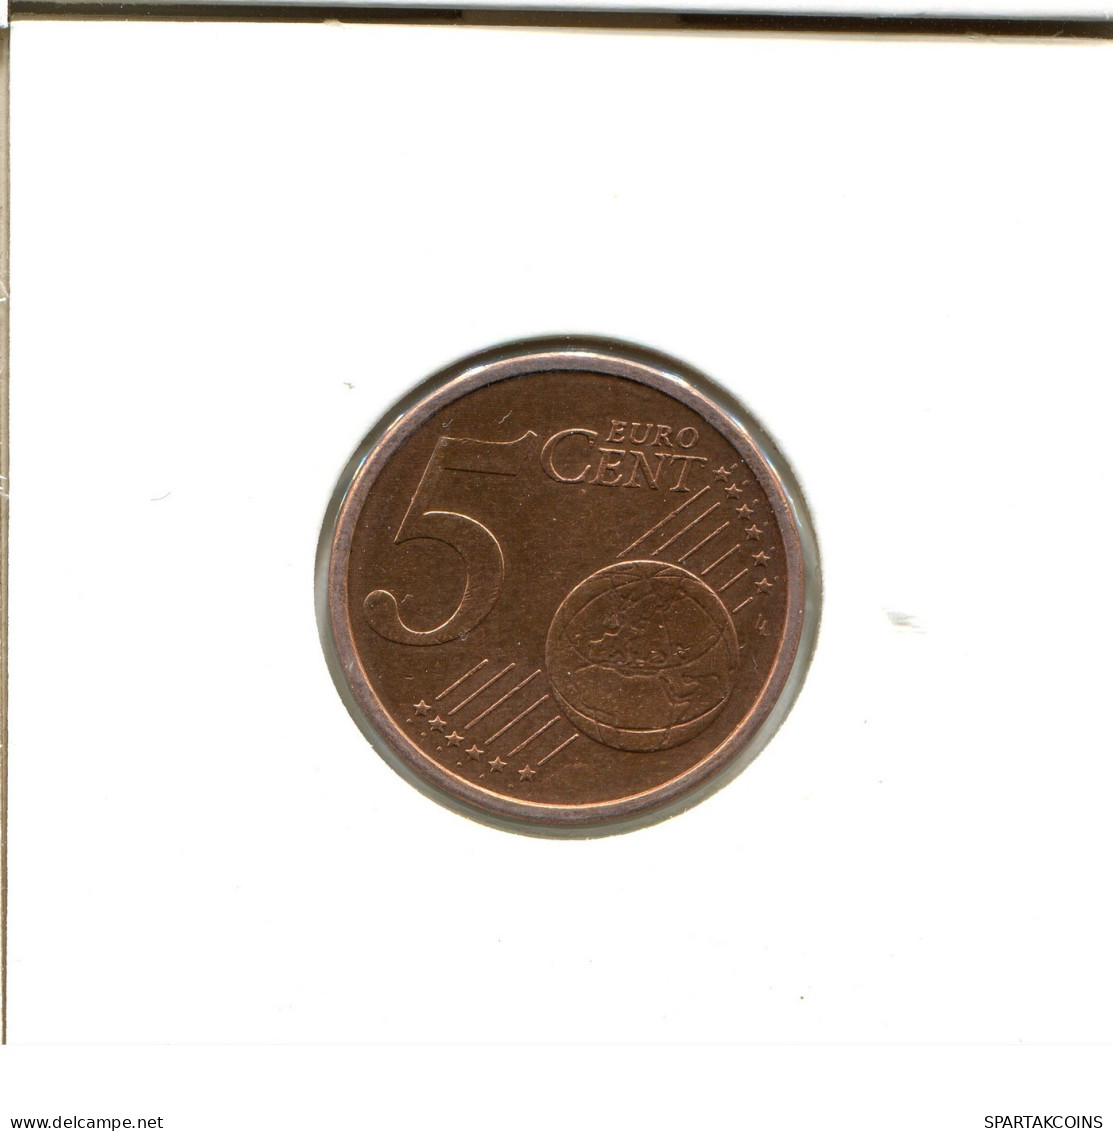 5 EURO CENTS 2004 ALEMANIA Moneda GERMANY #EU475.E.A - Alemania